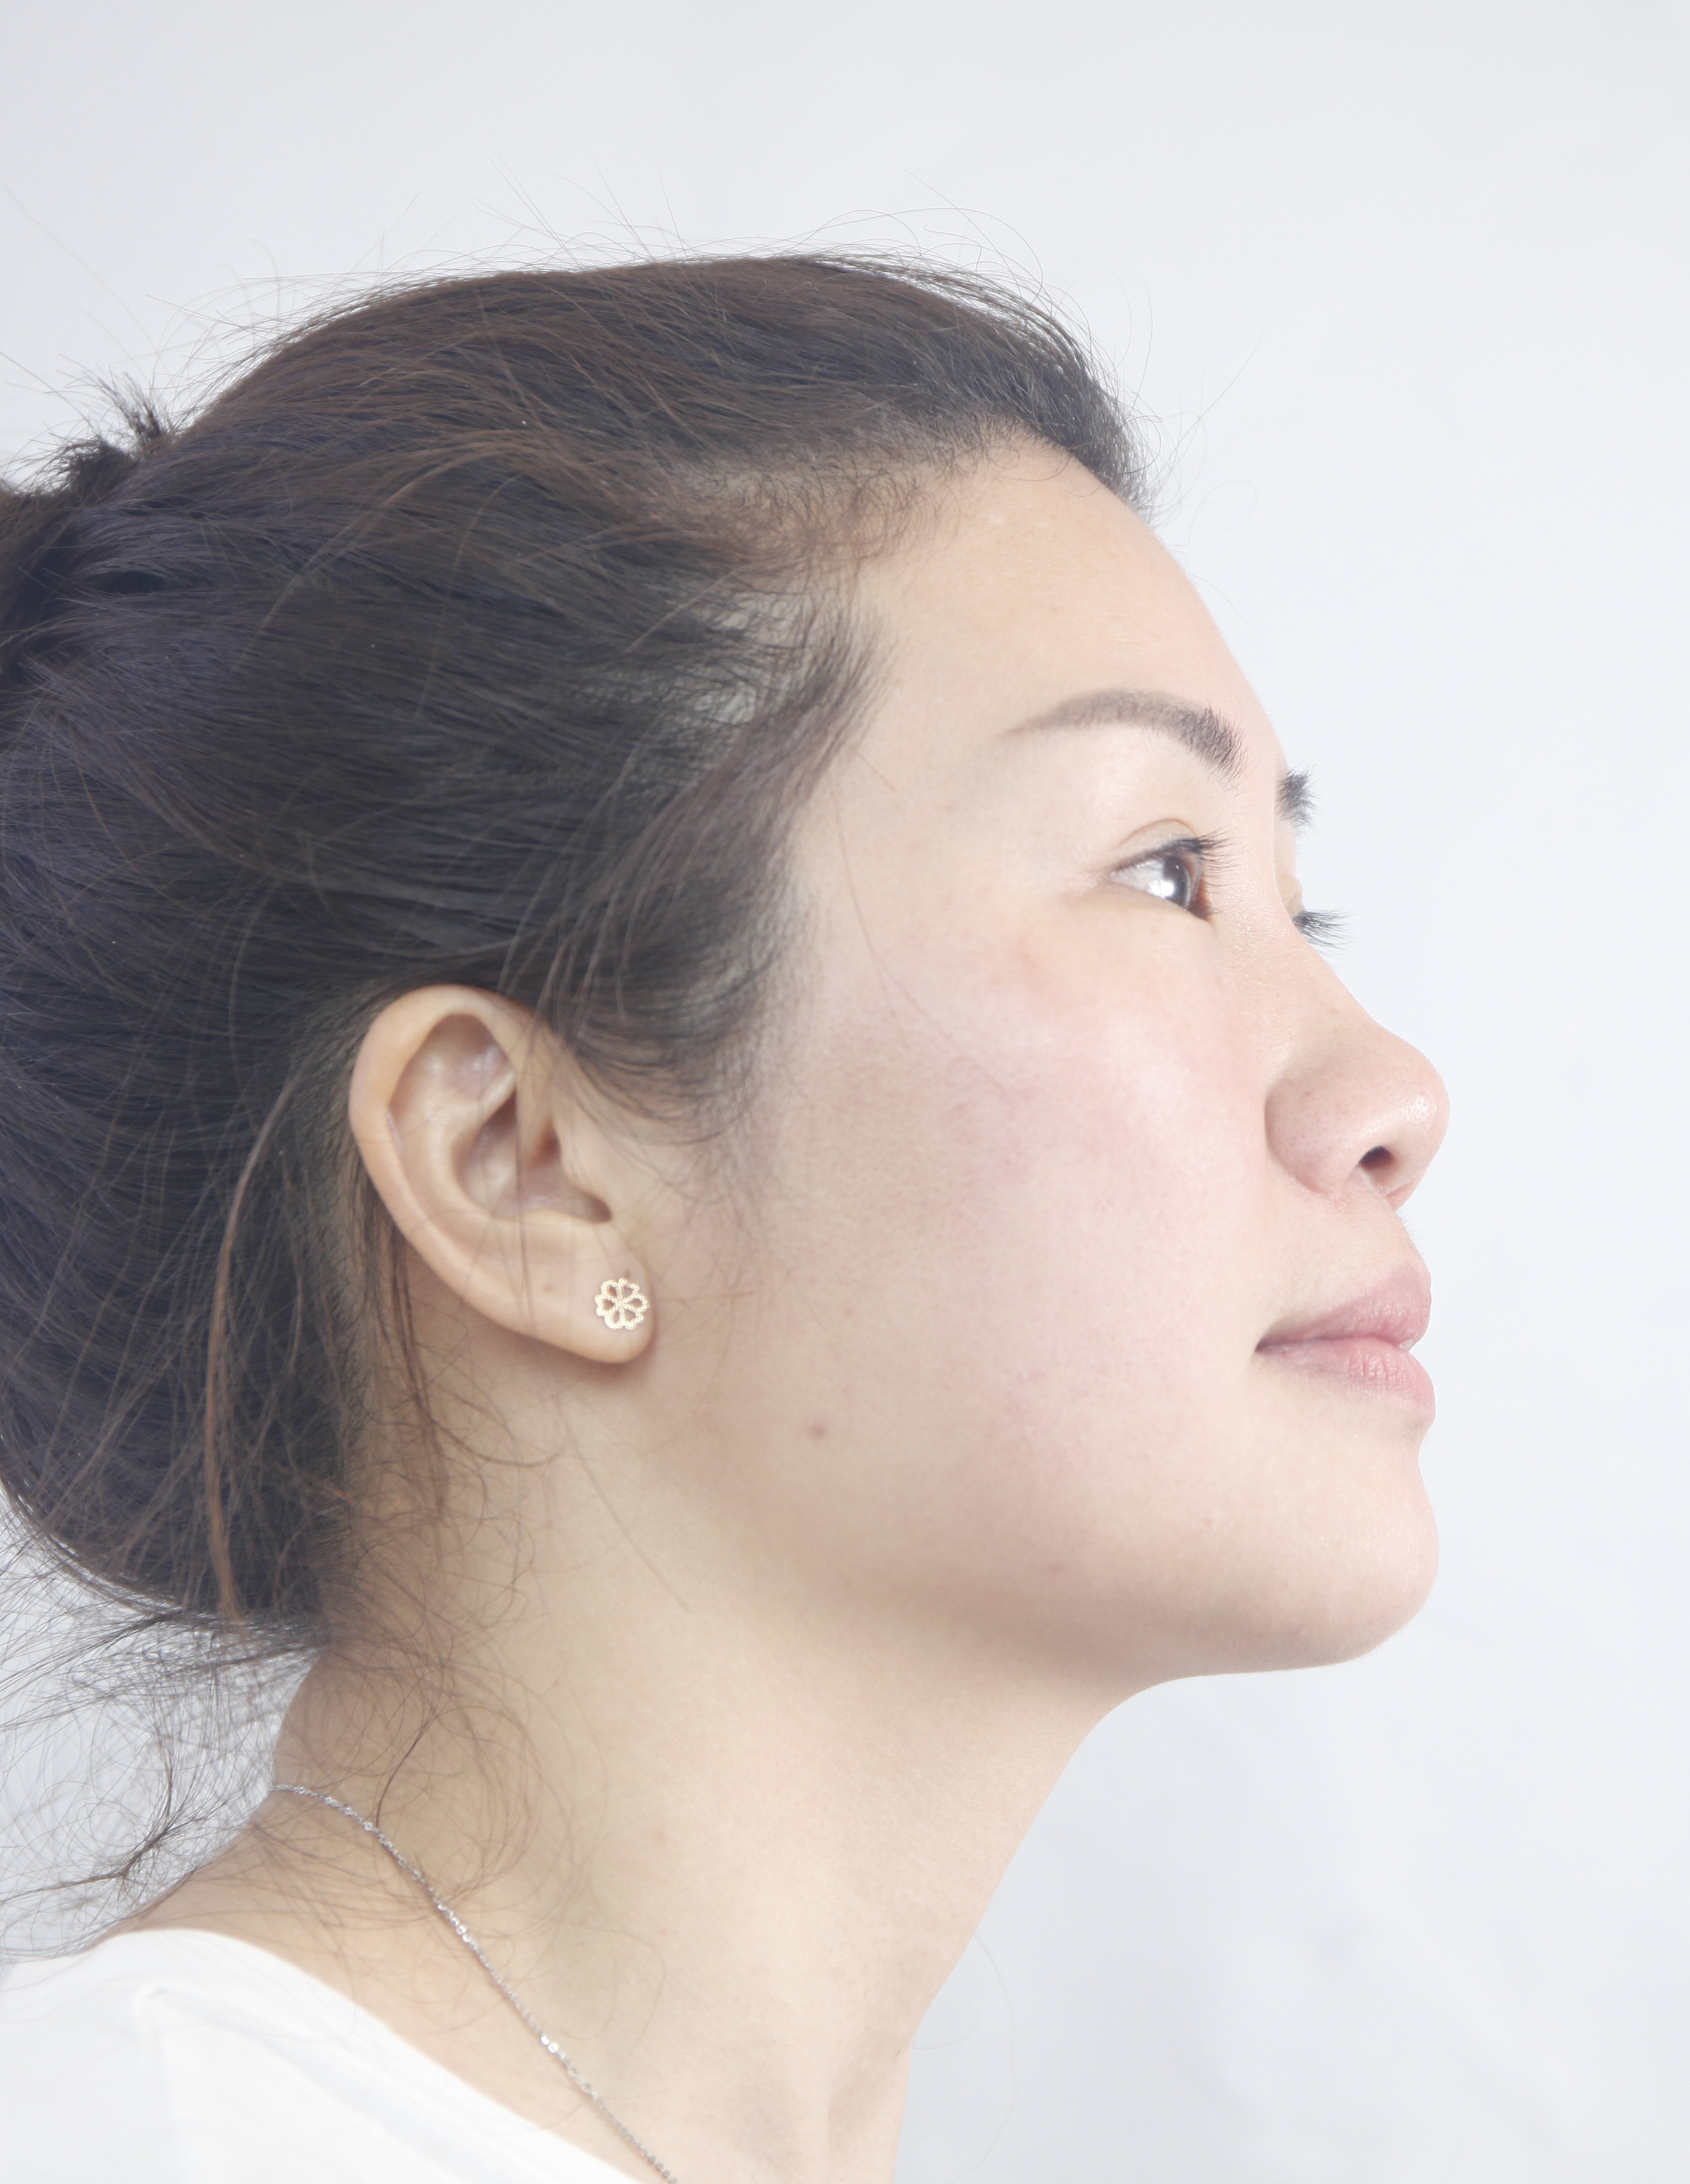 【20代女性・鼻先の形を綺麗に】耳介軟骨移植（1週間後） - 症例写真 - 美容整形、美容外科なら聖心美容クリニック